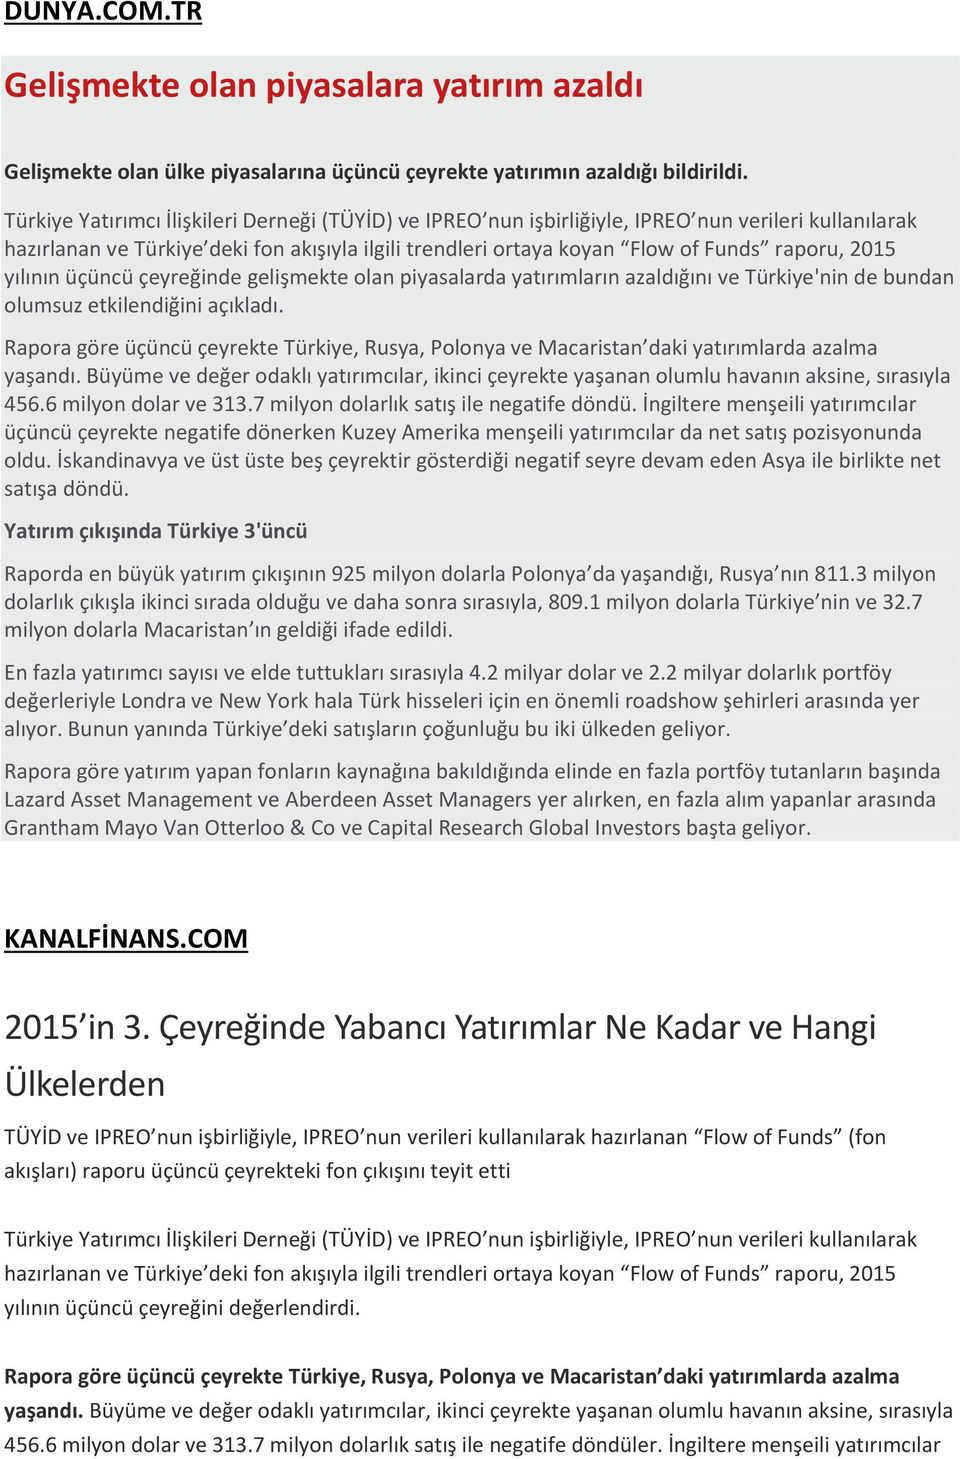 Yatırım çıkışında Türkiye 3'üncü KANALFİNANS.COM 2015 in 3.